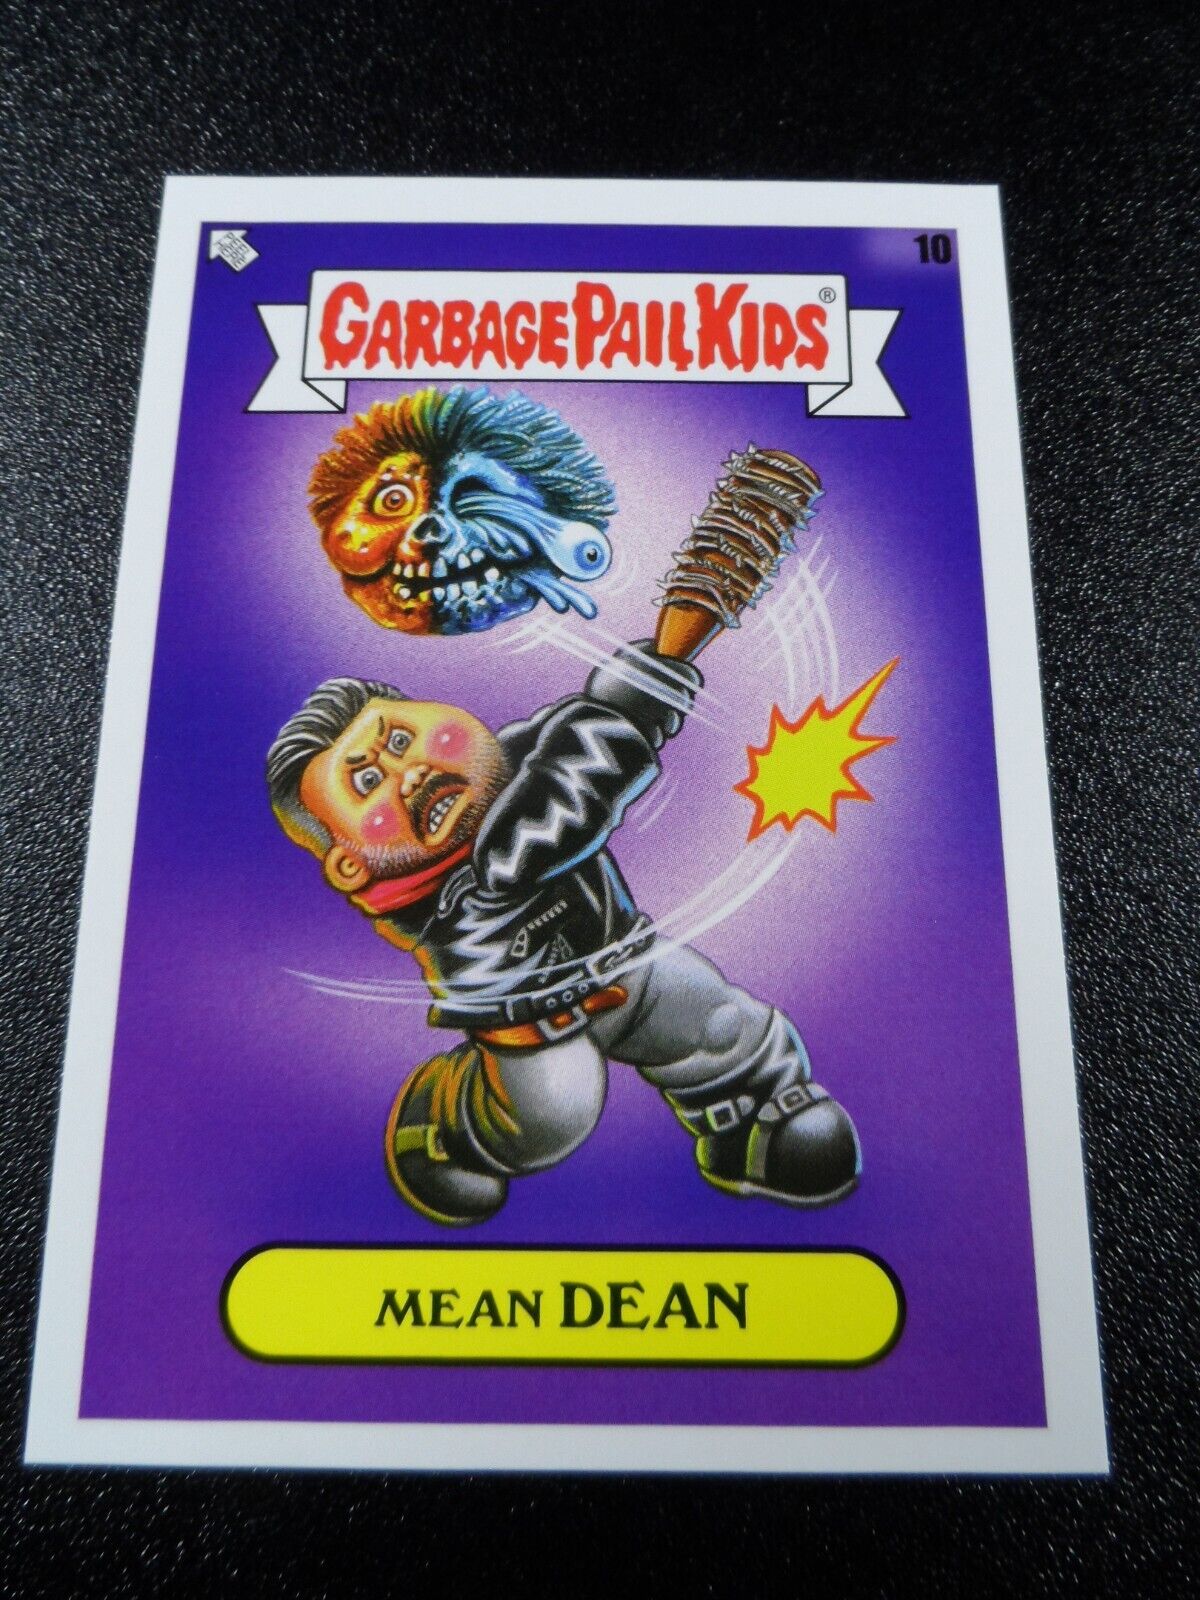 Walking Dead Jeffrey Dean Morgan Negan Spoof Garbage Pail Kids Card Bookworms